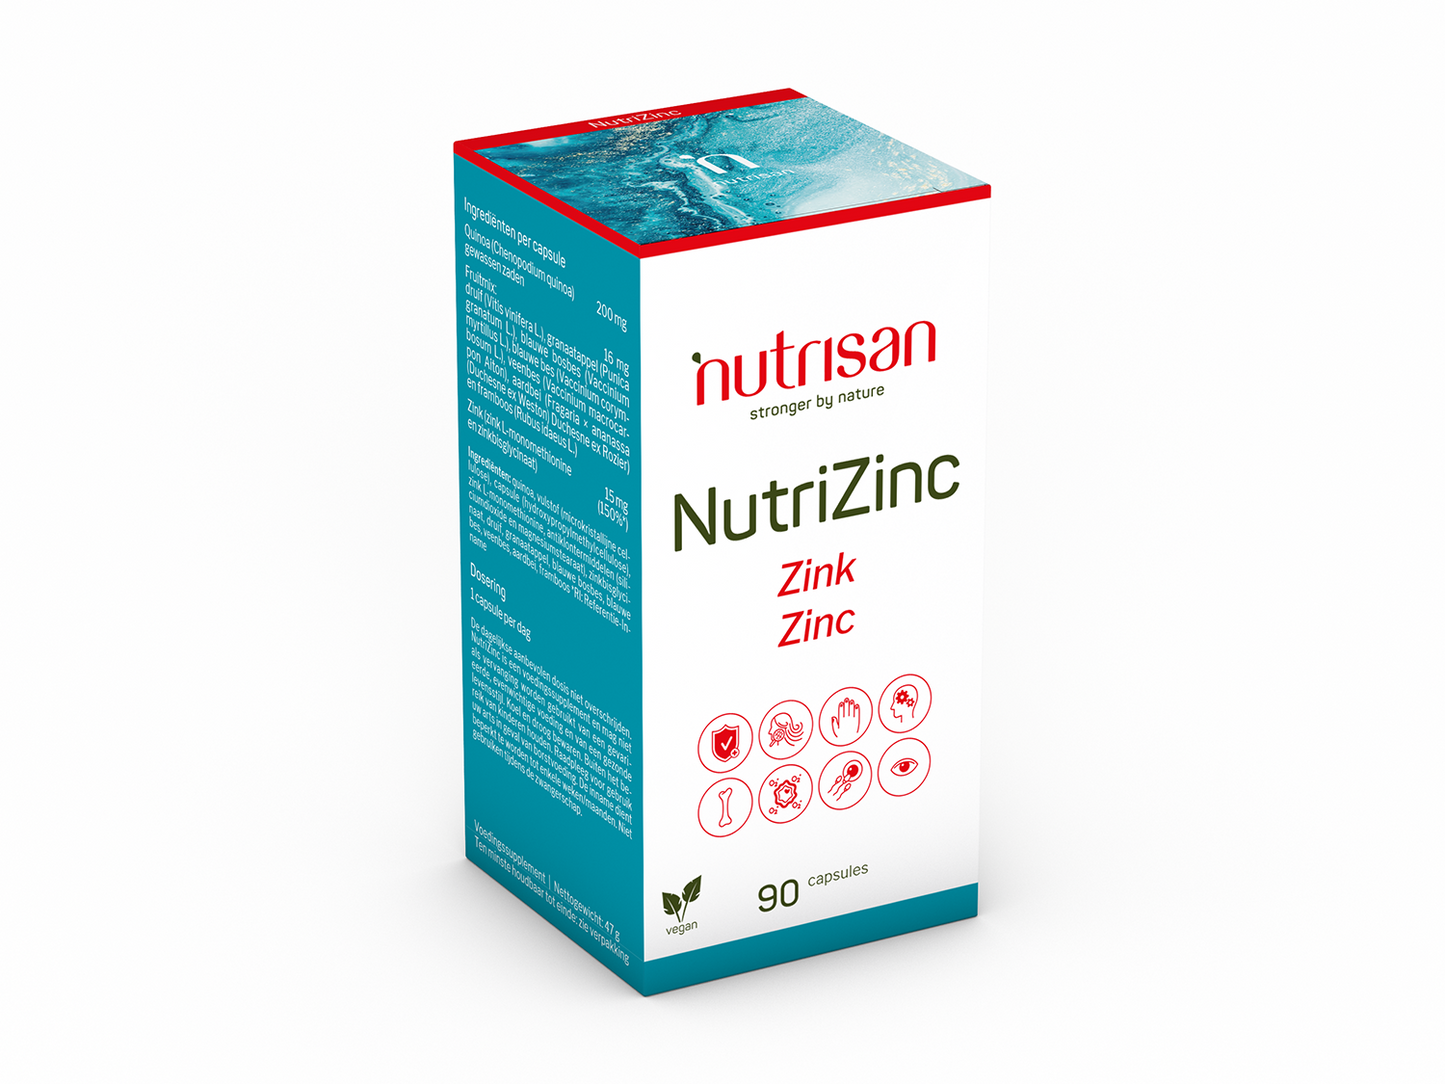 Nutrisan NutriZinc - Zink supplement - 90 capsules